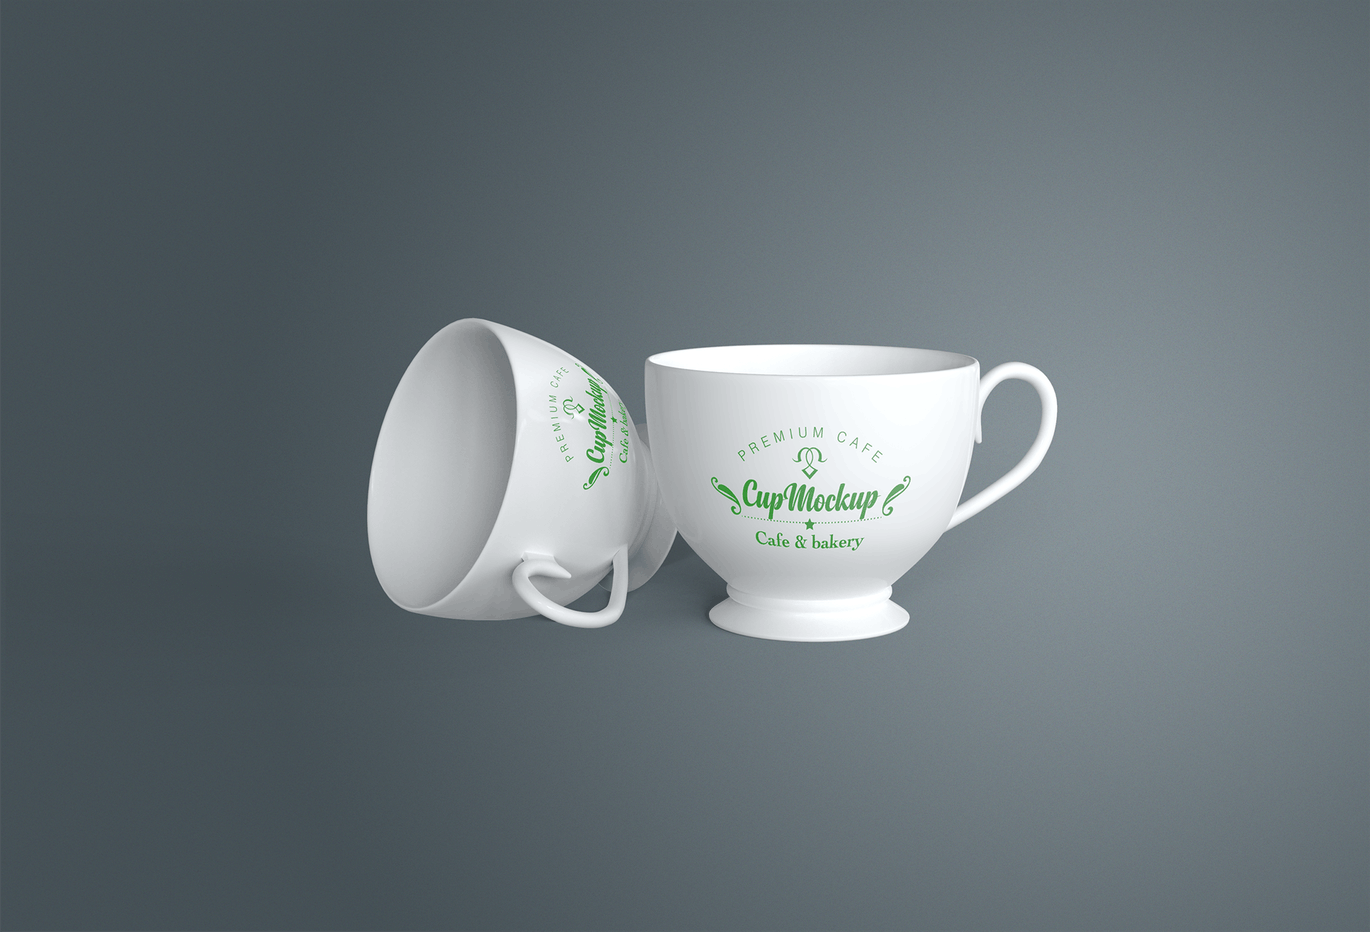 陶瓷茶杯咖啡杯外观设计样机模板v2 Cup Mockup 2.0插图(1)